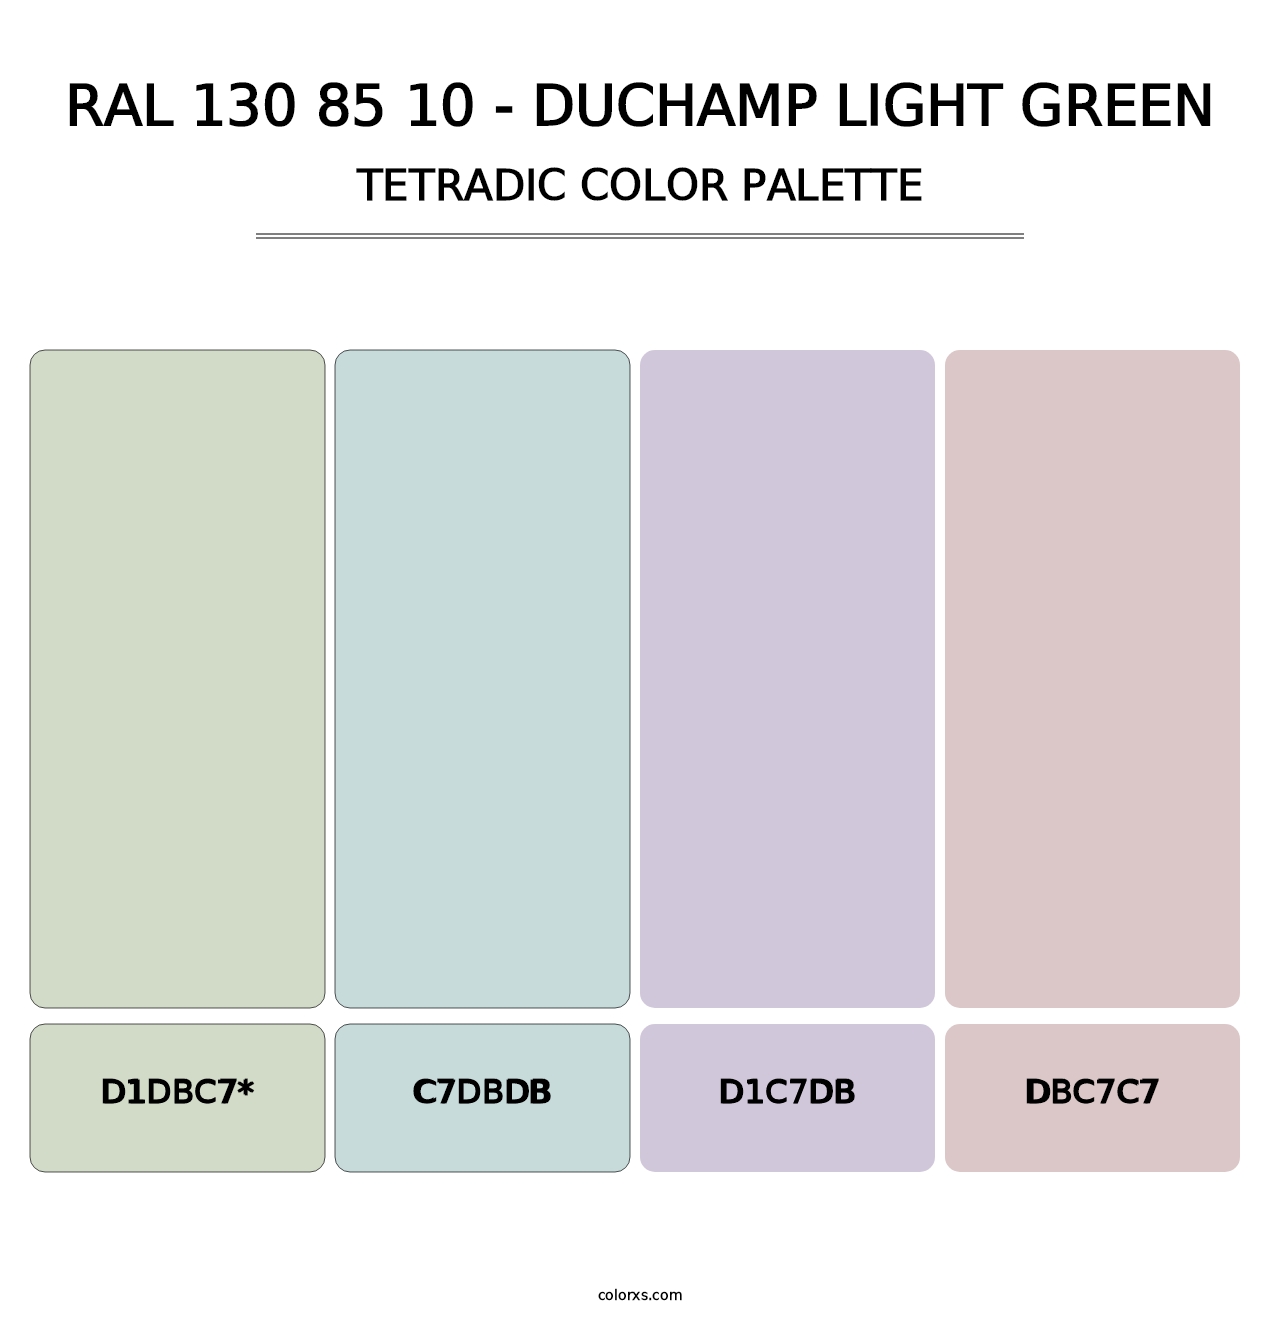 RAL 130 85 10 - Duchamp Light Green - Tetradic Color Palette